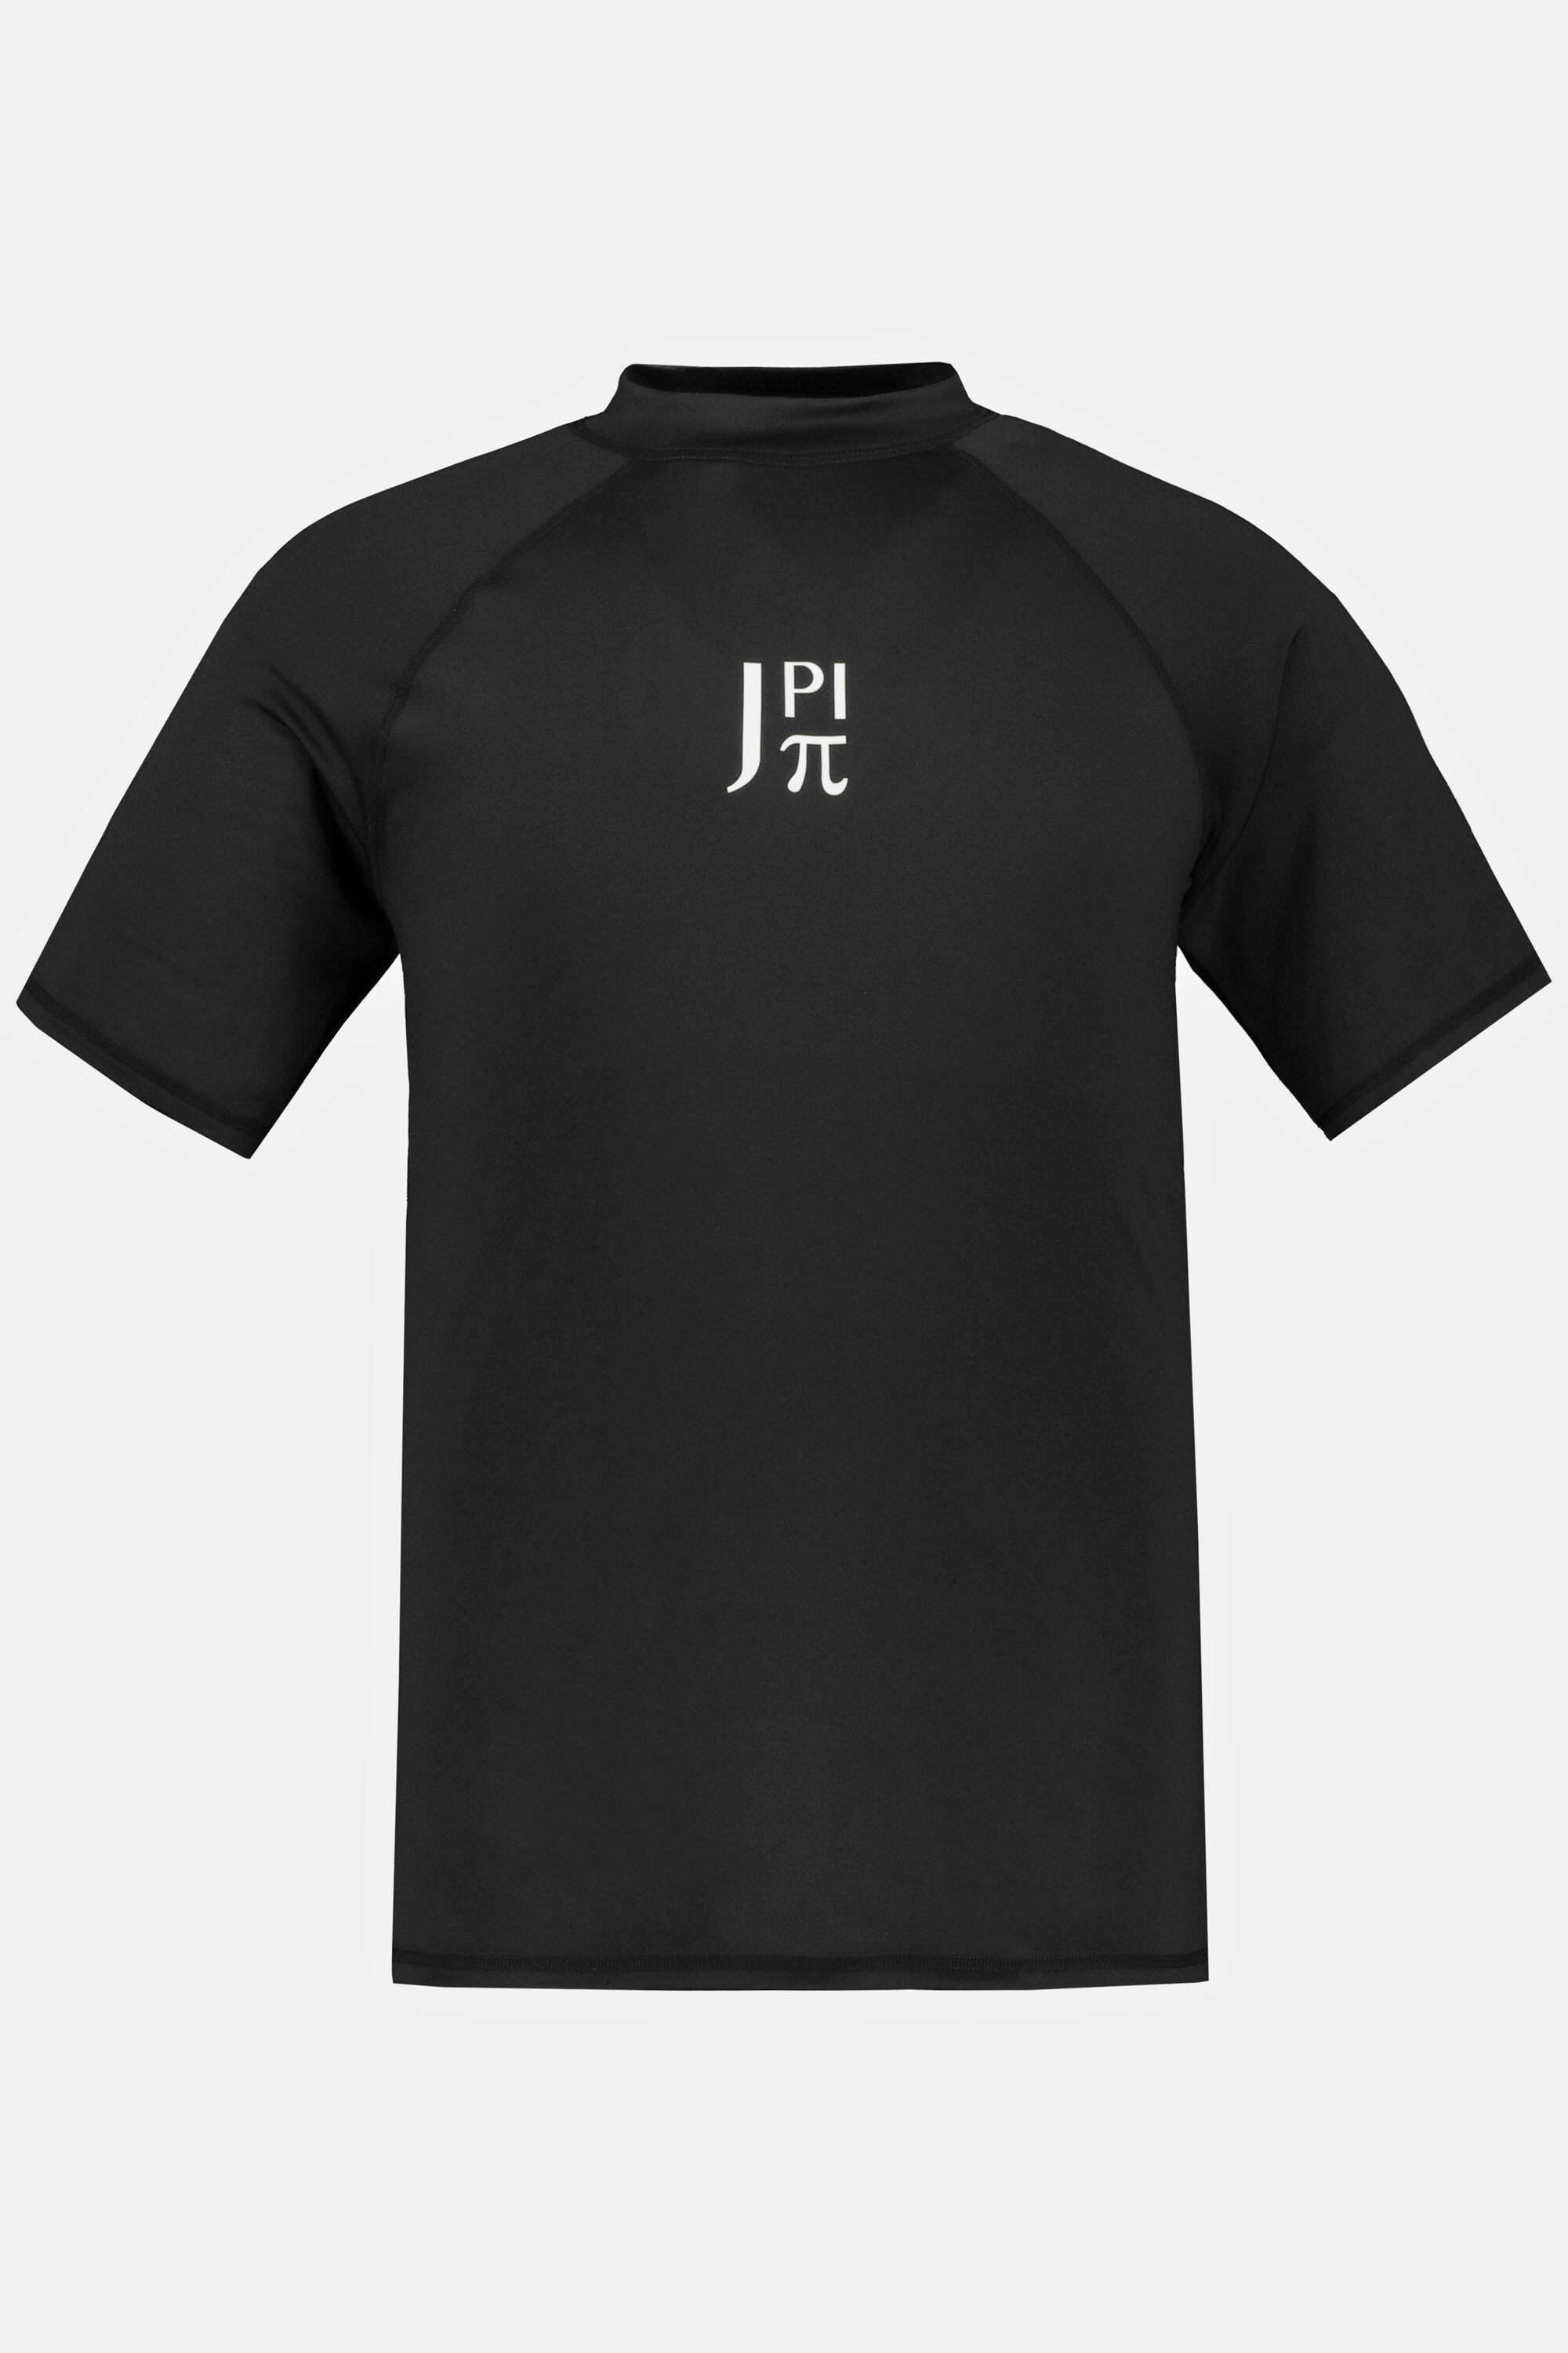 Stehkragen T-Shirt Halbarm schwarz Schwimmshirt JP1880 UV-Schutz